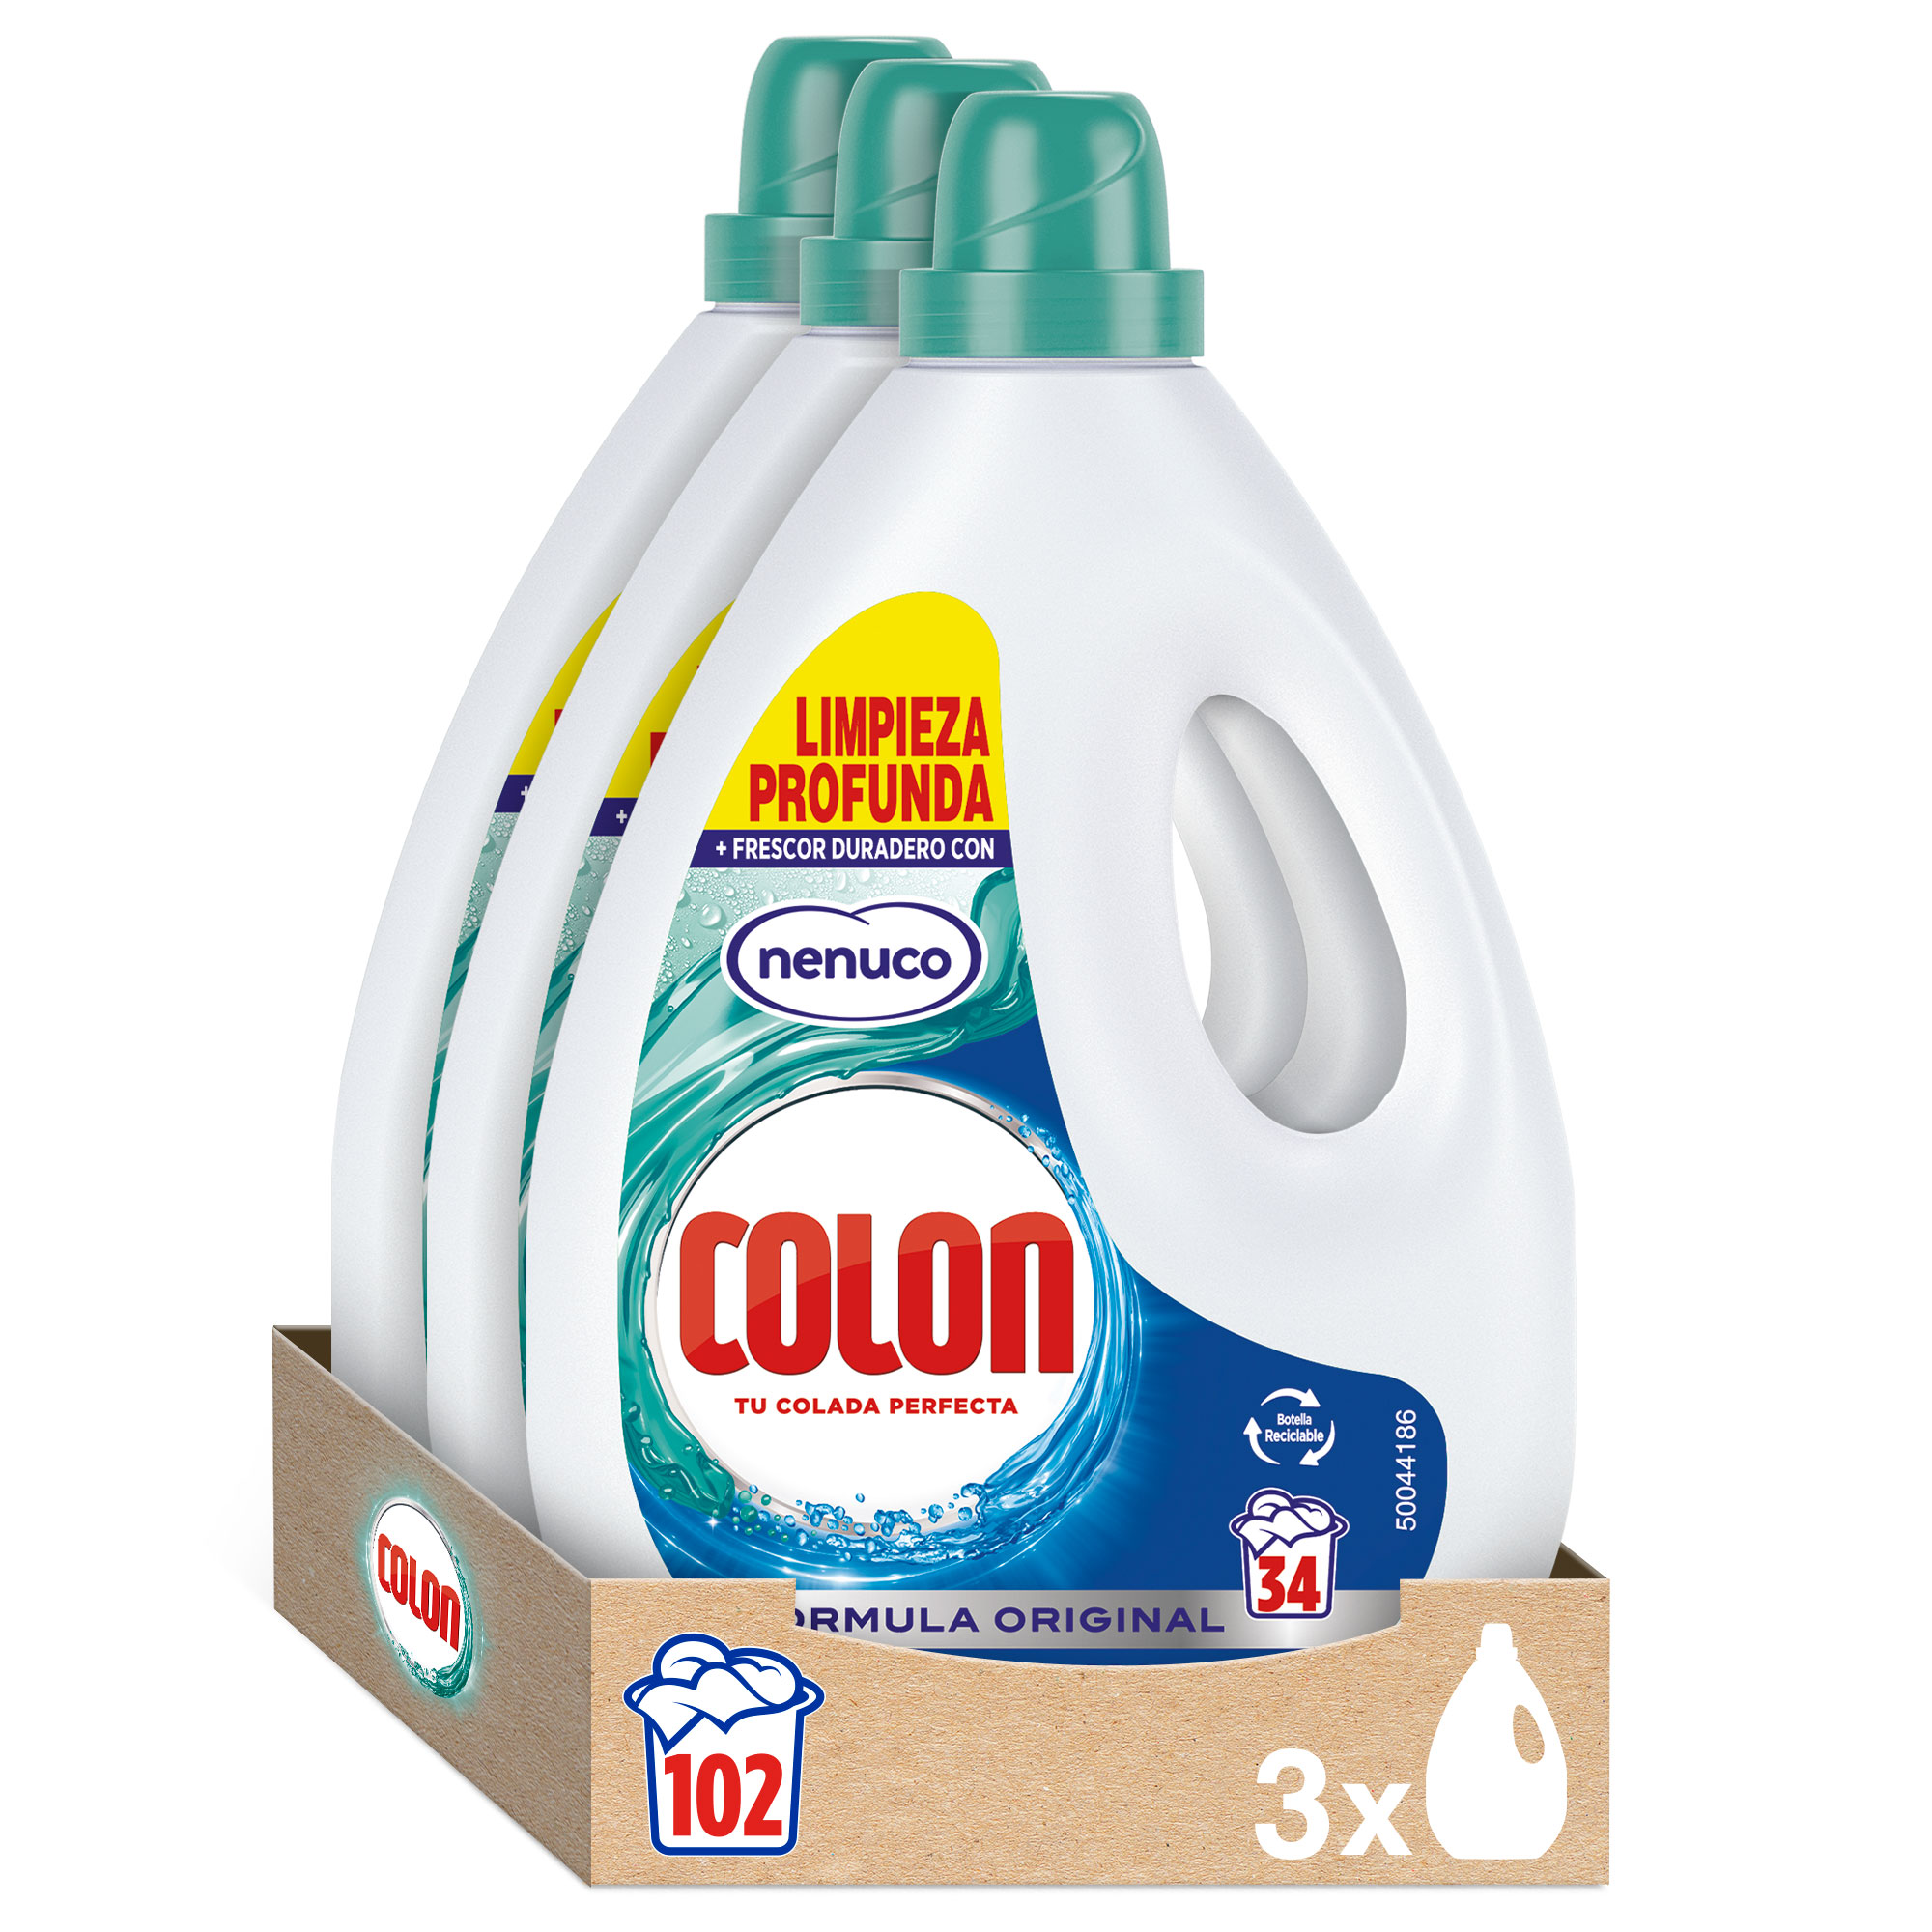 Colon Polvo Activo - Detergente para lavadora, adecuado para ropa blanca y  de color, formato polvo - 135 dosis